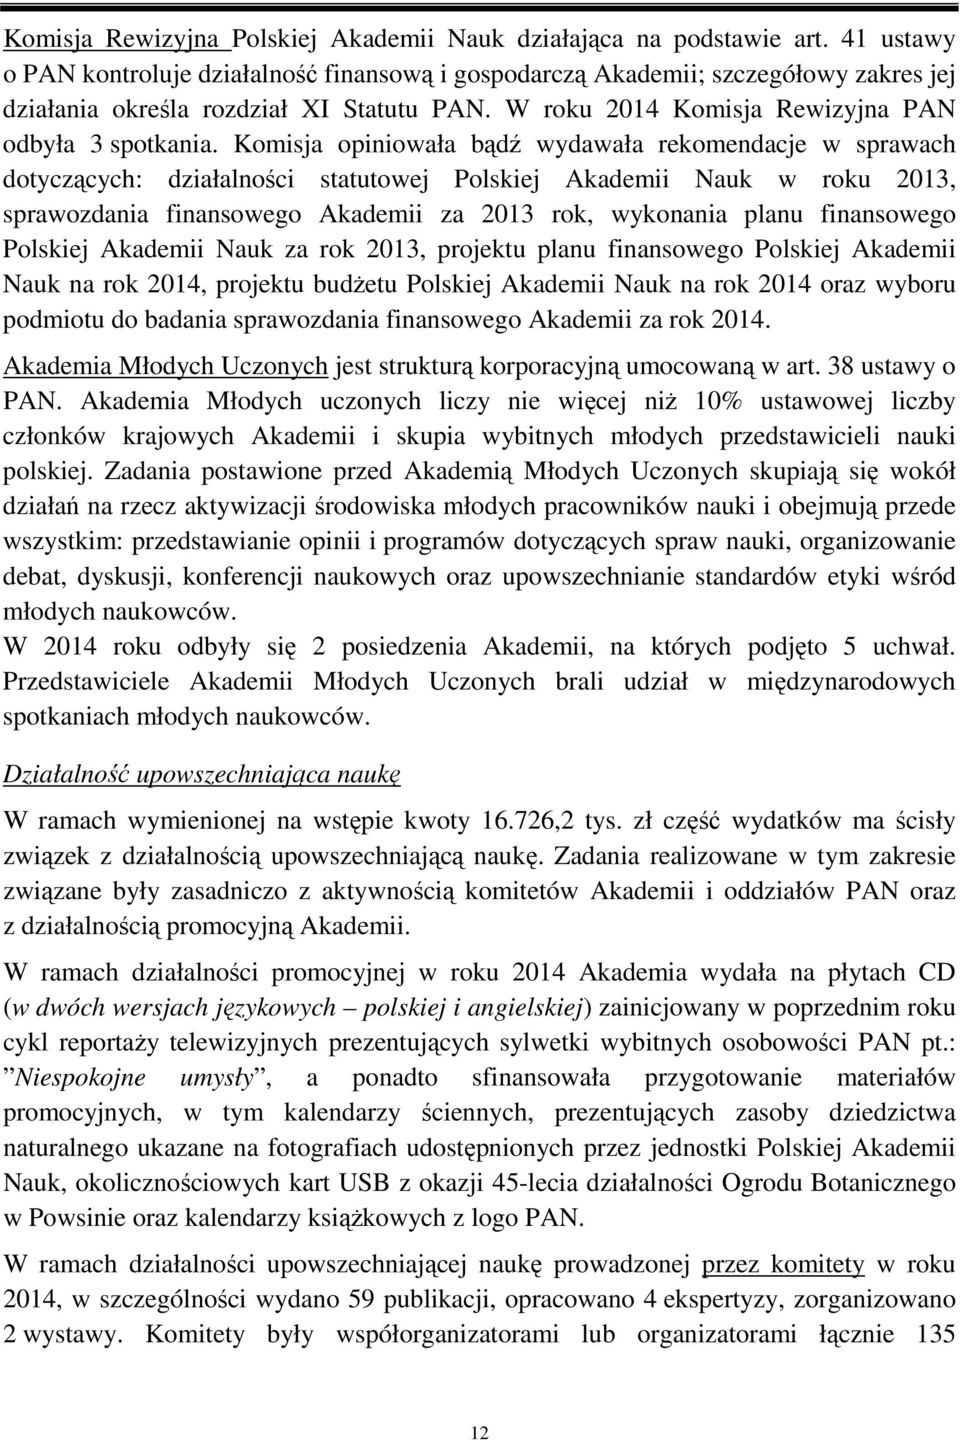 Komisja opiniowała bądź wydawała rekomendacje w sprawach dotyczących: działalności statutowej Polskiej Akademii Nauk w roku 2013, sprawozdania finansowego Akademii za 2013 rok, wykonania planu